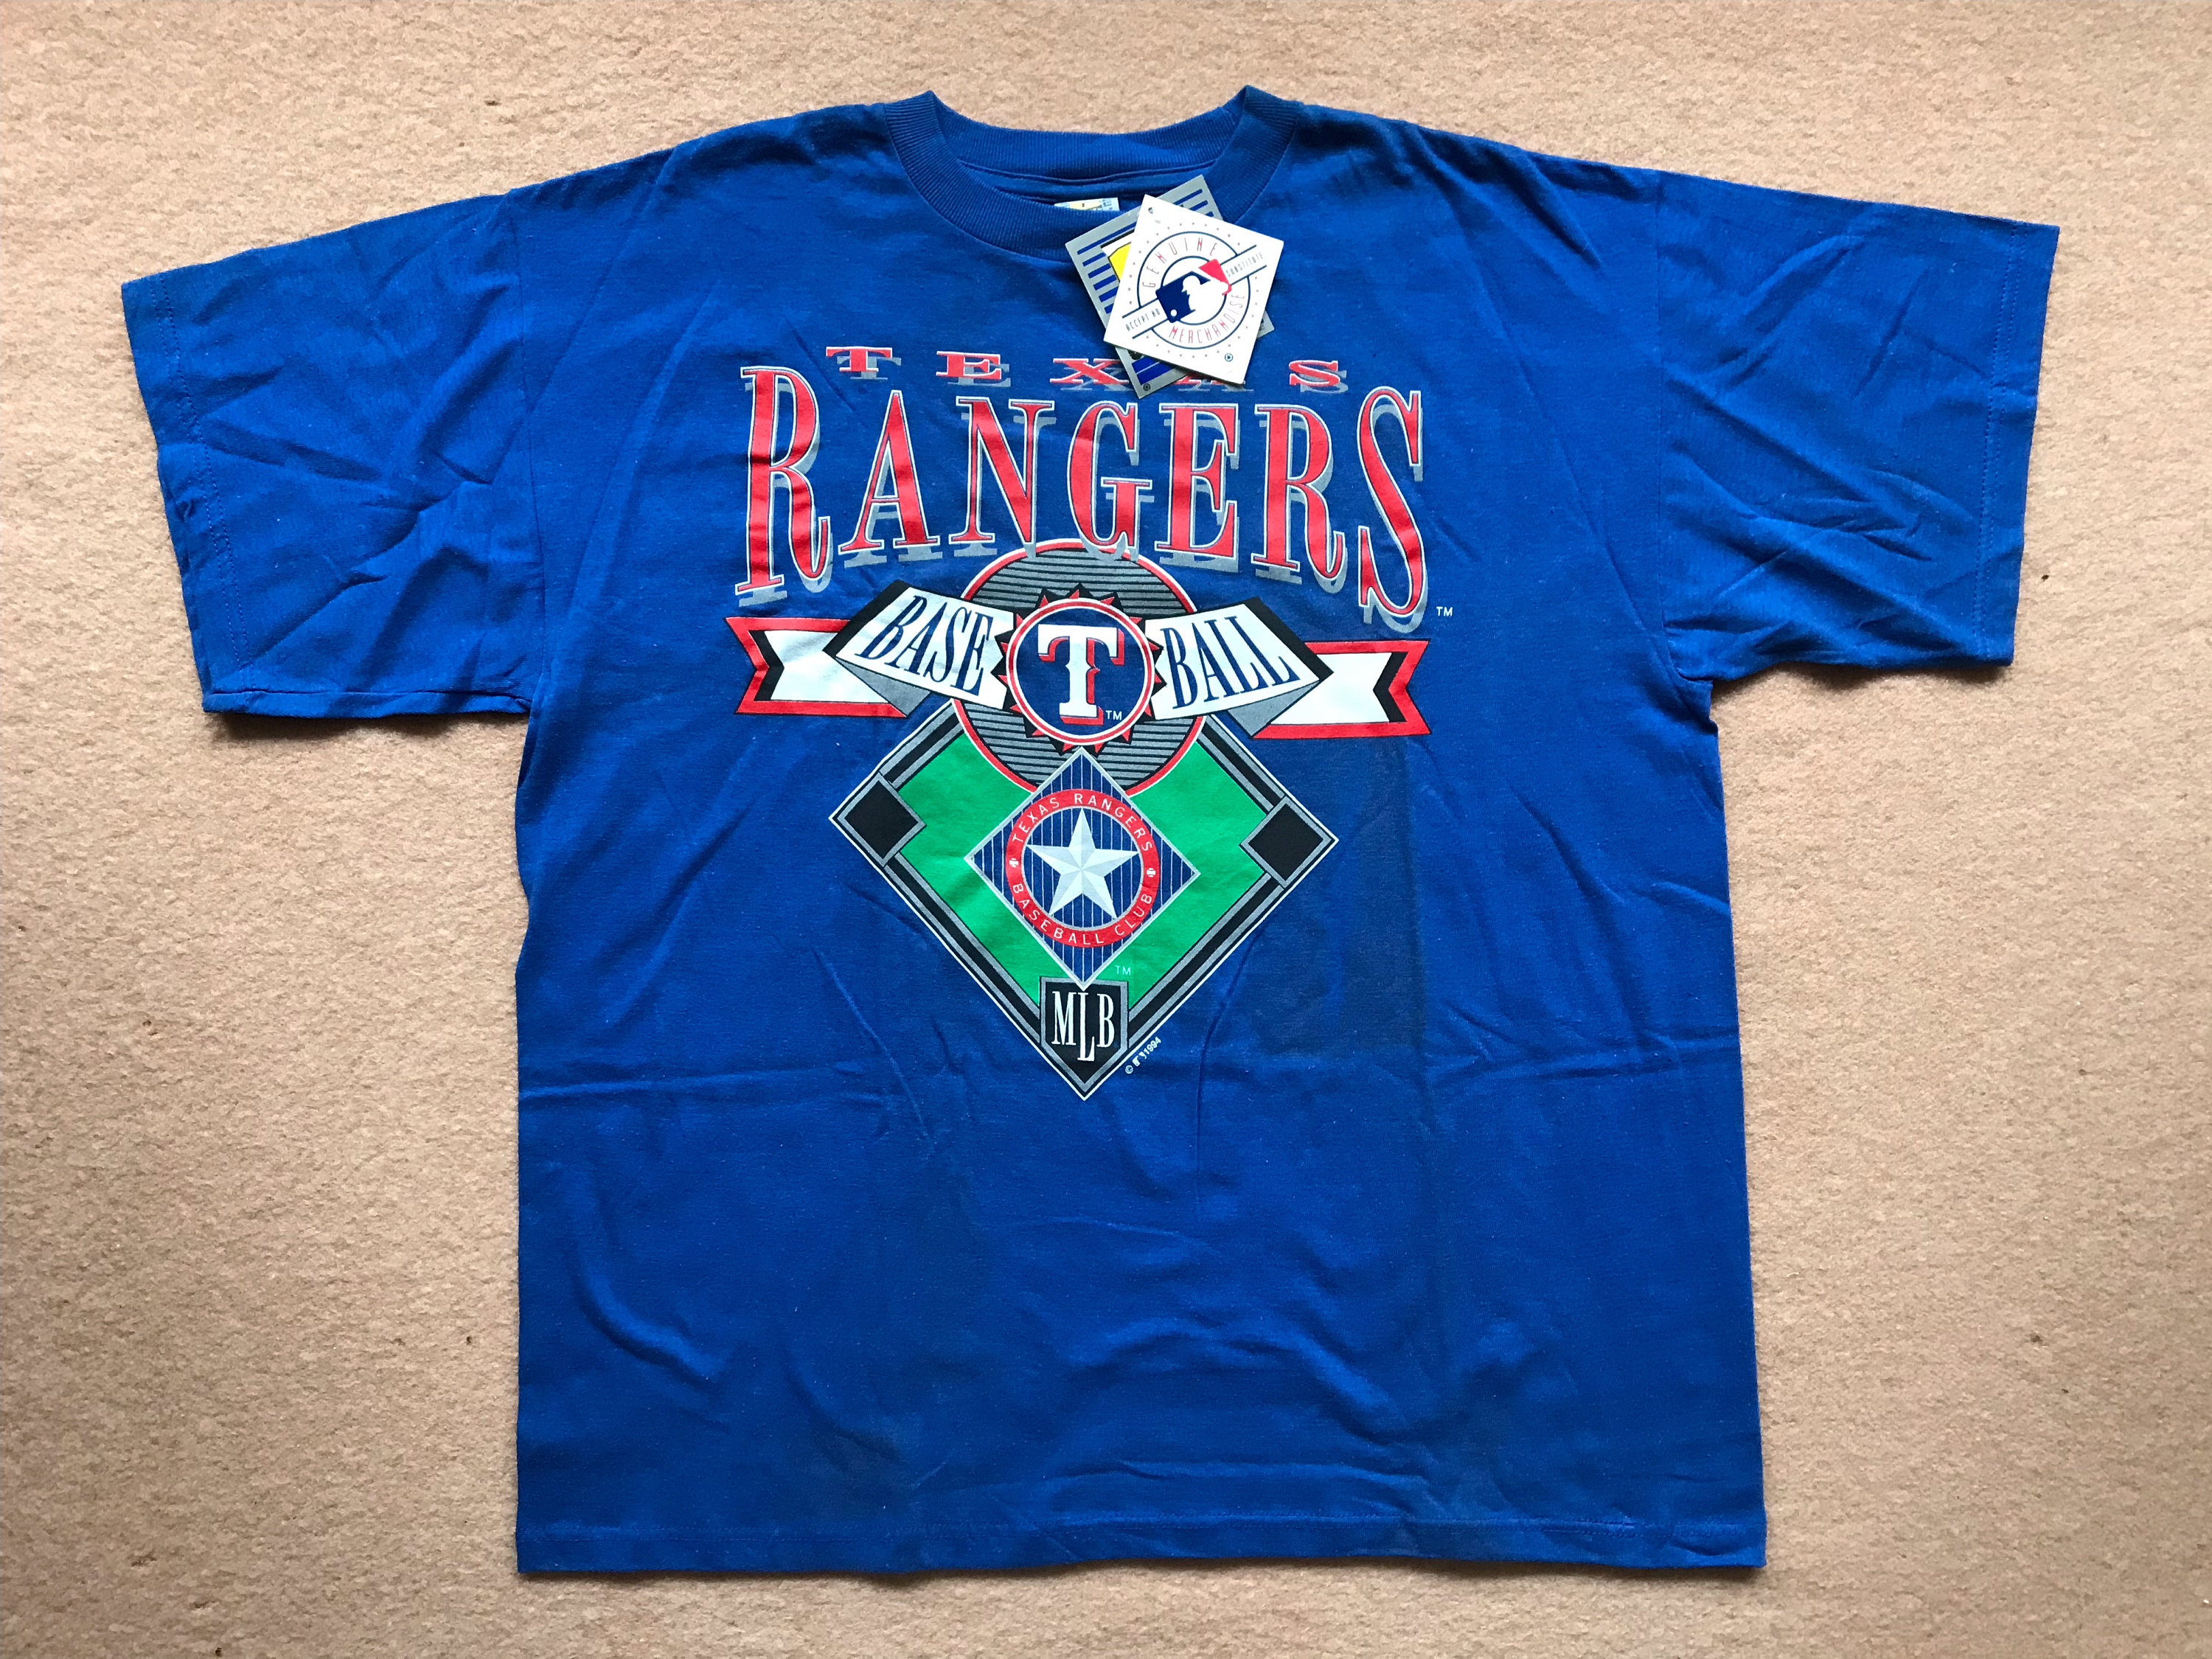 Vintage Texas Rangers T shirt Best Texas Baseball Fan Shirt